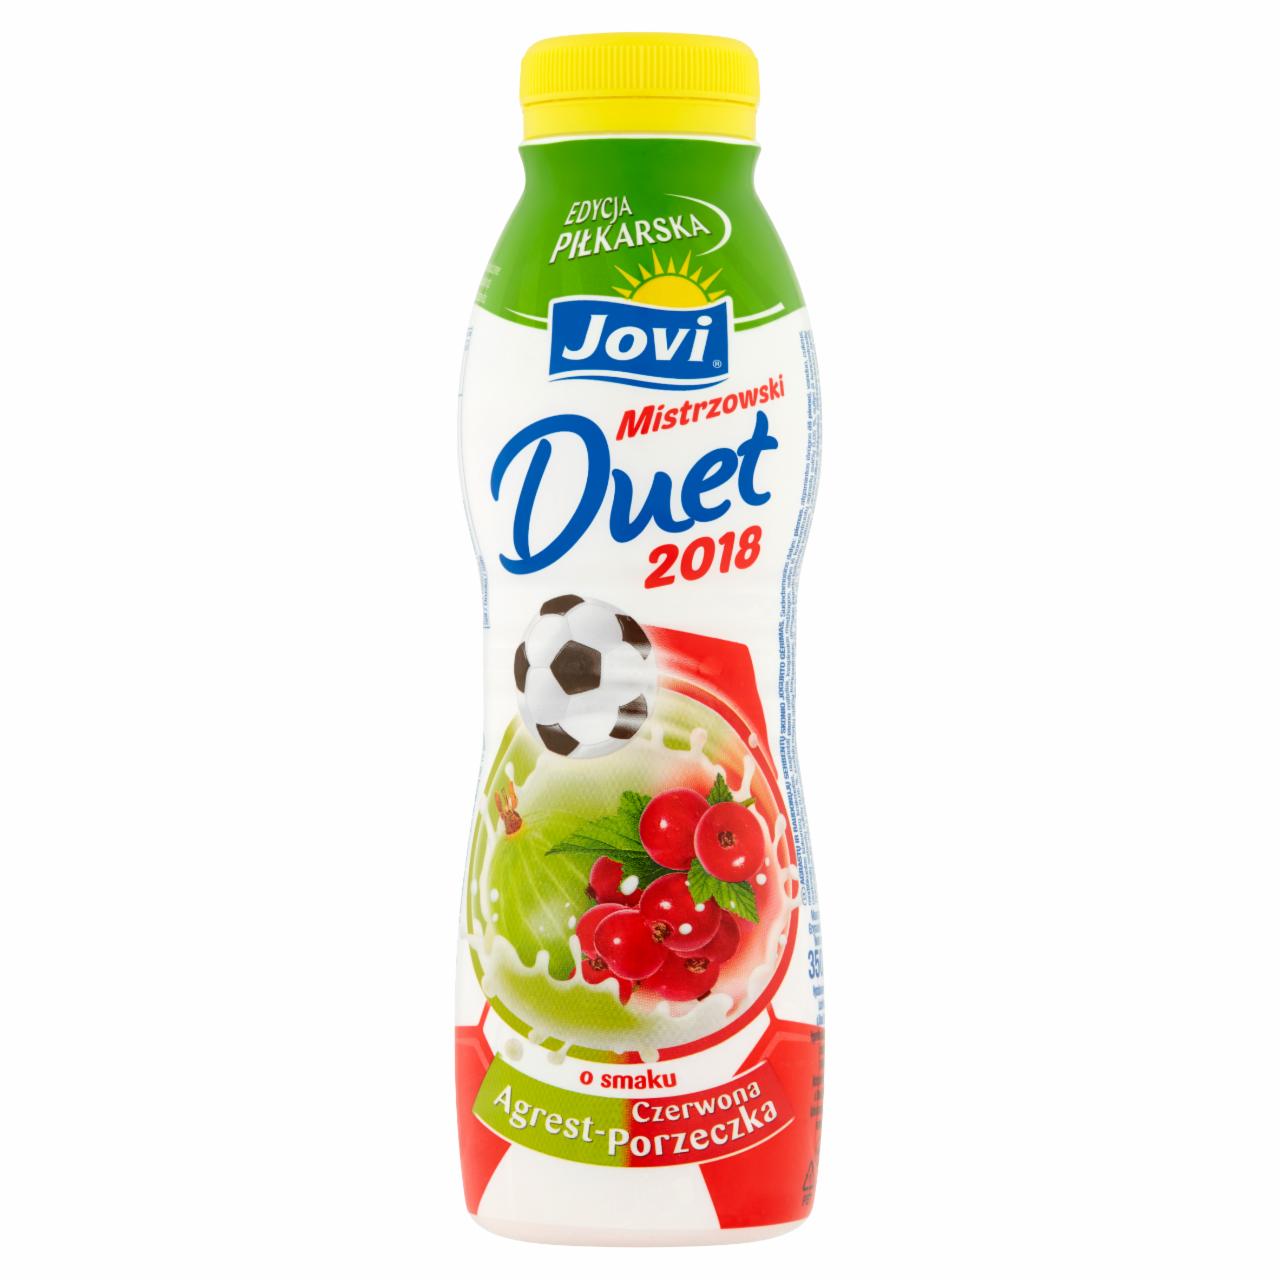 Zdjęcia - Jovi Mistrzowski Duet 2018 Napój jogurtowy o smaku agrest-czerwona porzeczka 350 g